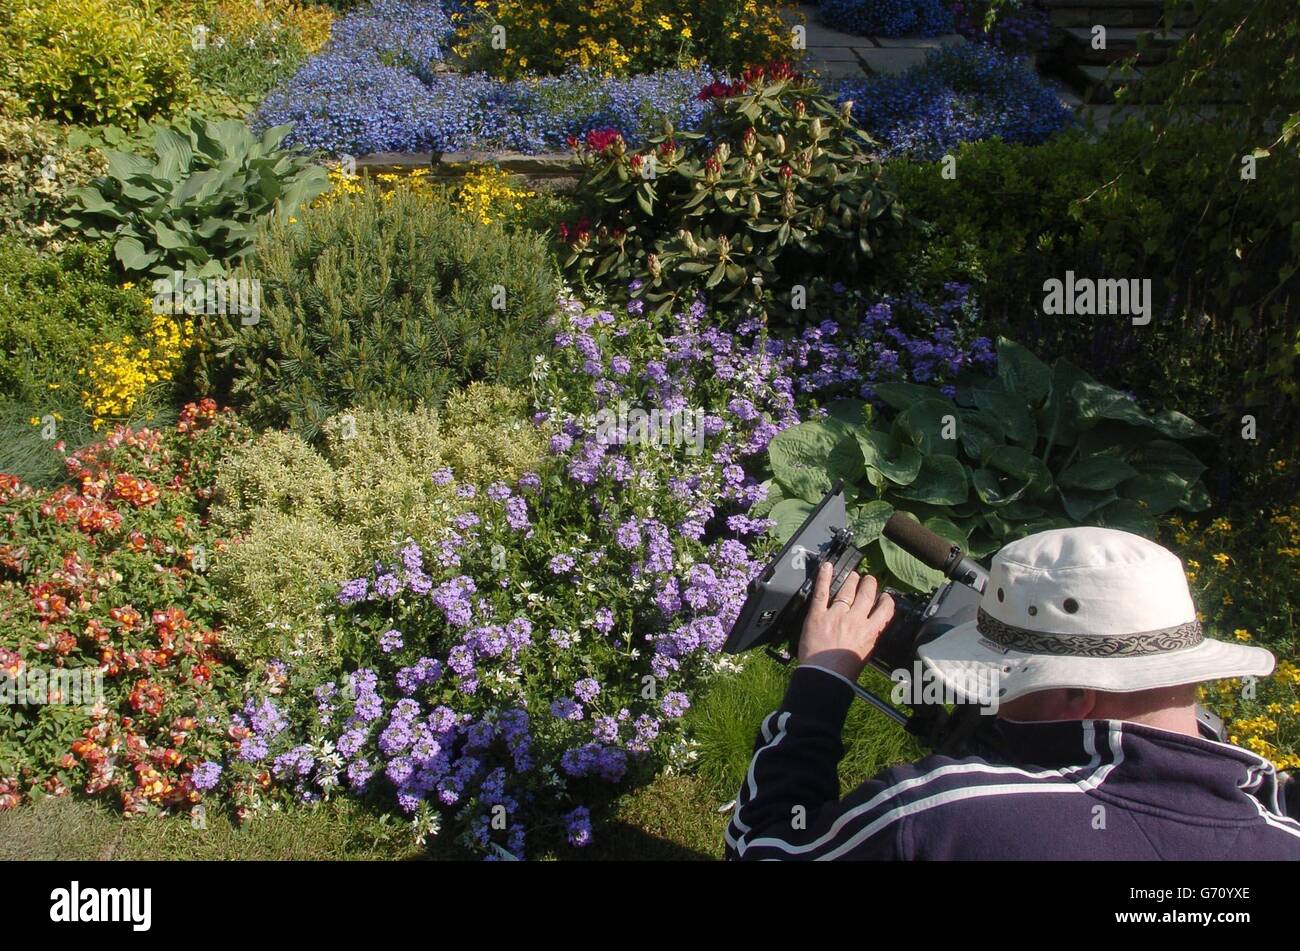 Ein Fernsehkameramann filmt den Gardman Wild Bird Garden, der auf der diesjährigen Chelsea Flower Show zu sehen sein wird. Der Garten wurde von David Domoney, der seinen Sitz in Kineton in Warwickshire hat, in Zusammenarbeit mit Gardman, dem Marktführer für Vogelpflege, entworfen. Die Blumenschau öffnet am Dienstag, den 25. Mai, und läuft bis zum 28. Mai. Stockfoto